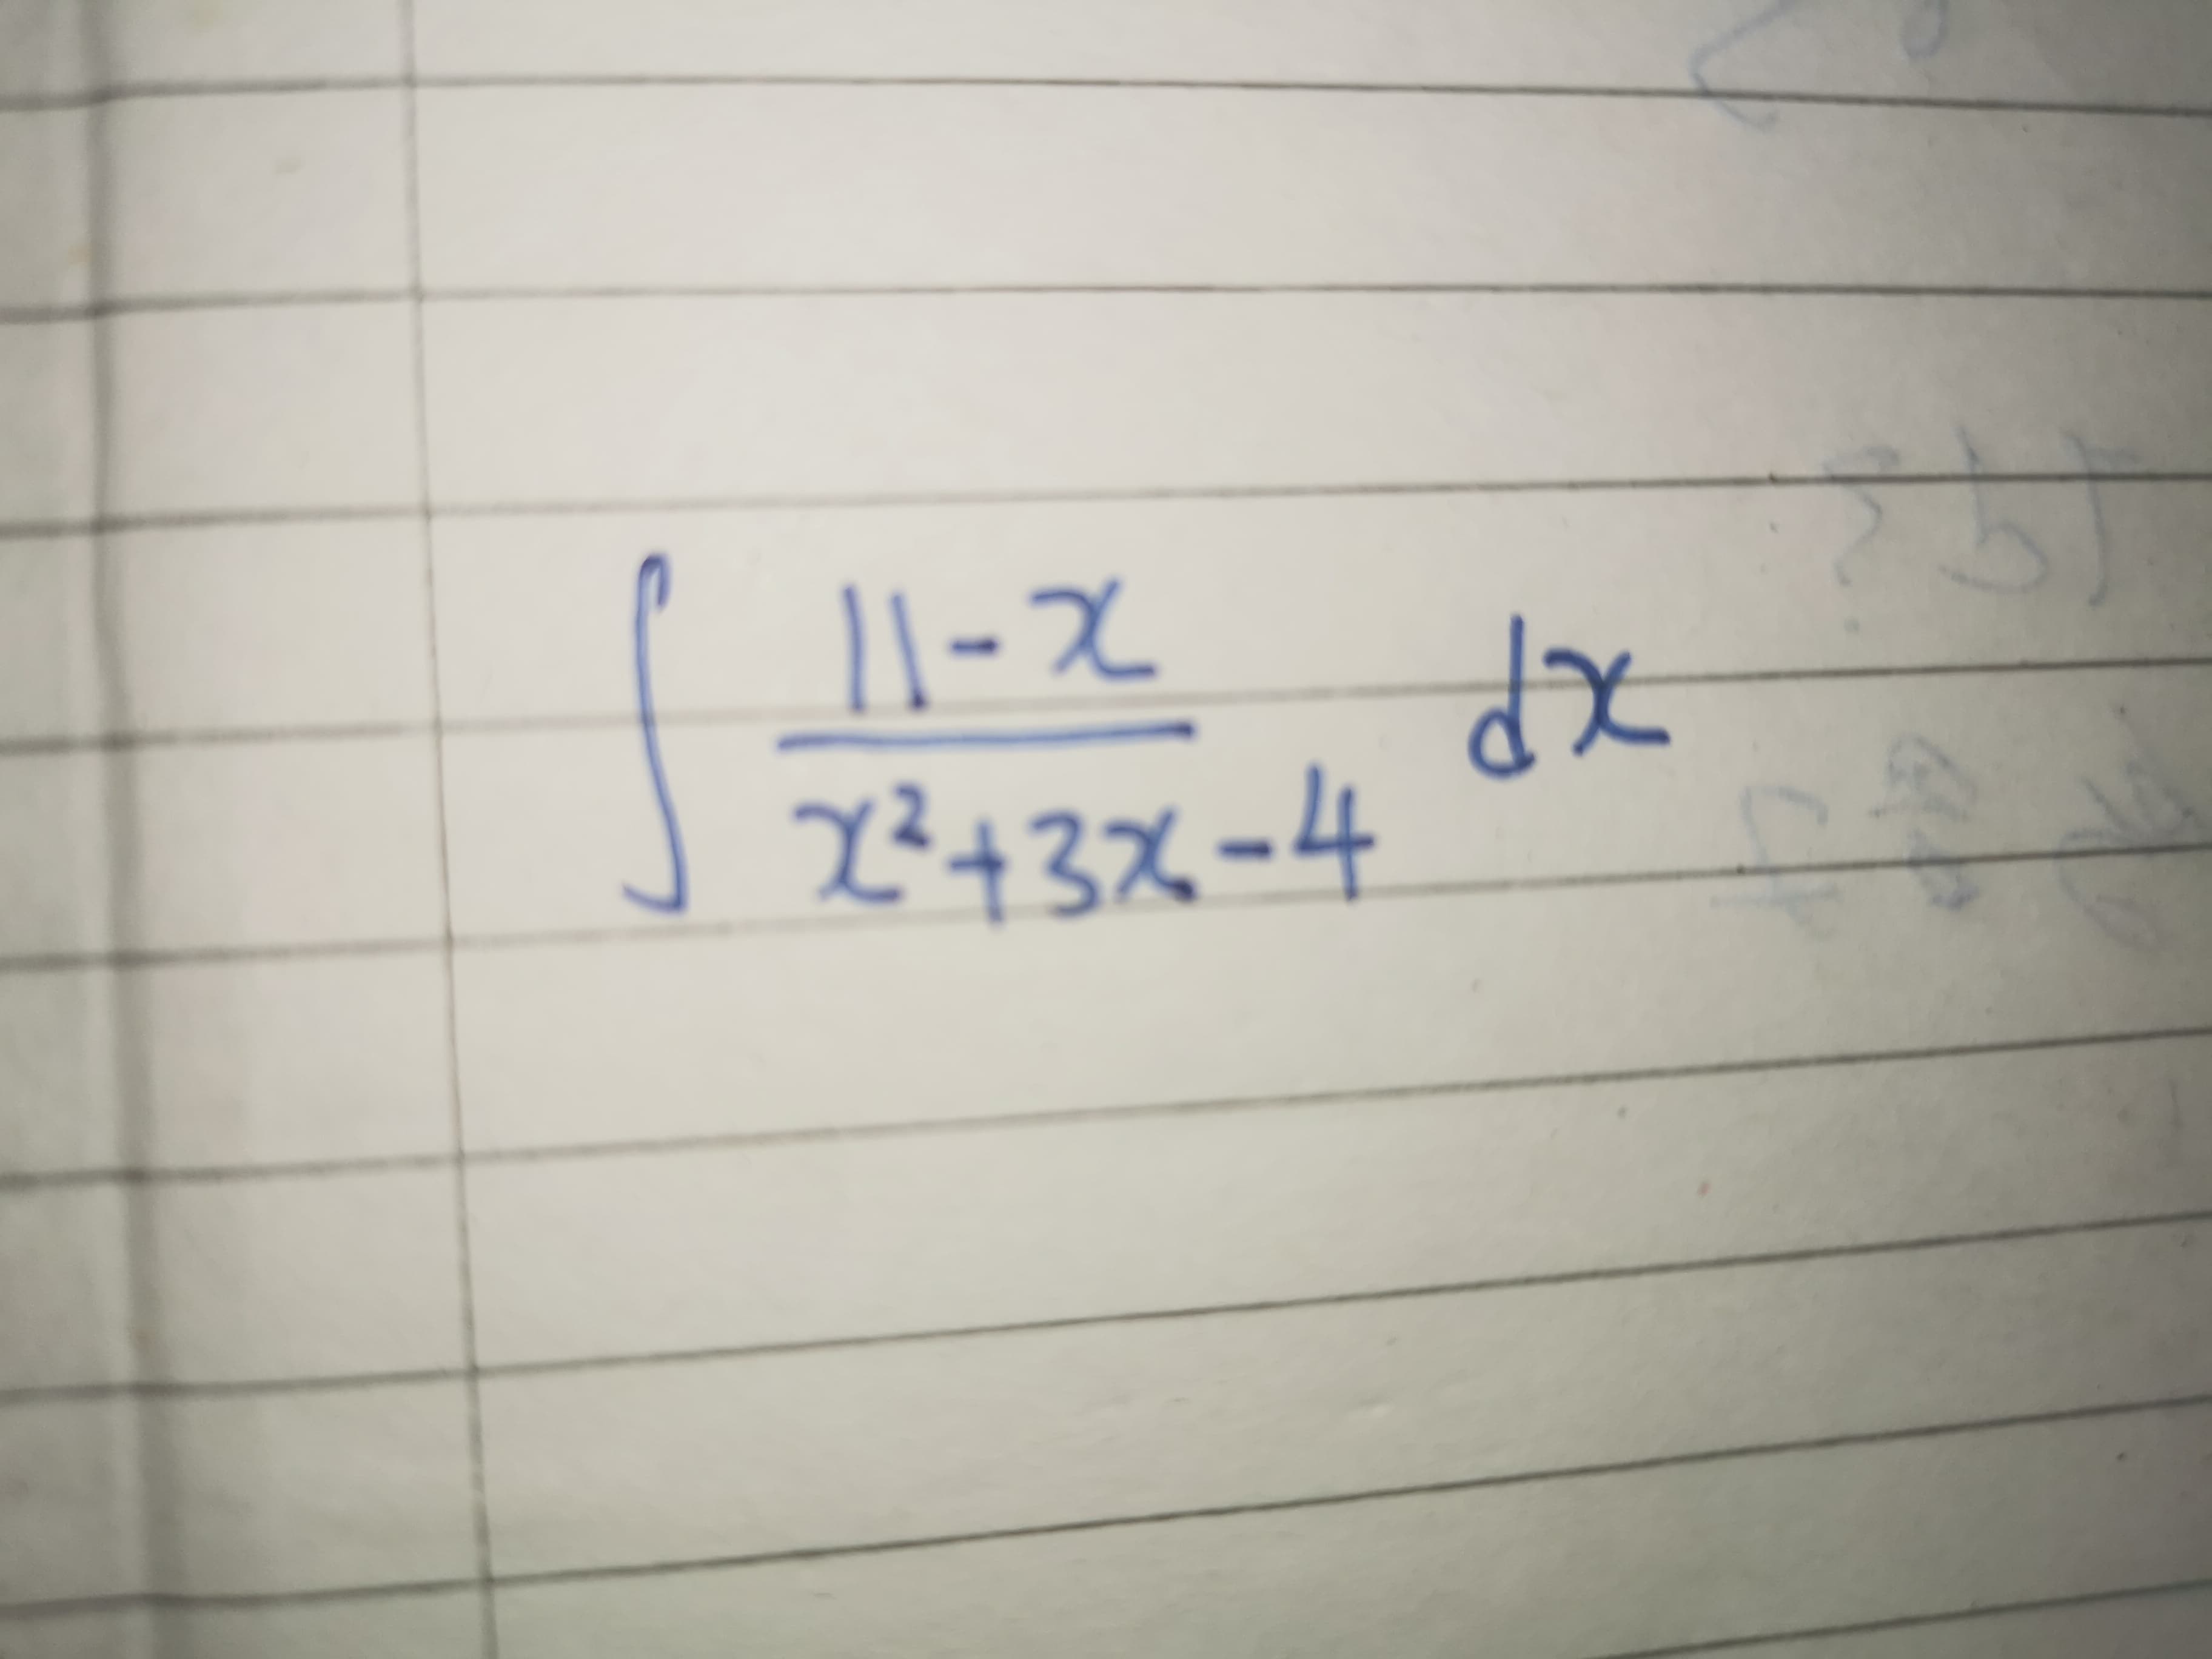 2²43x=4
